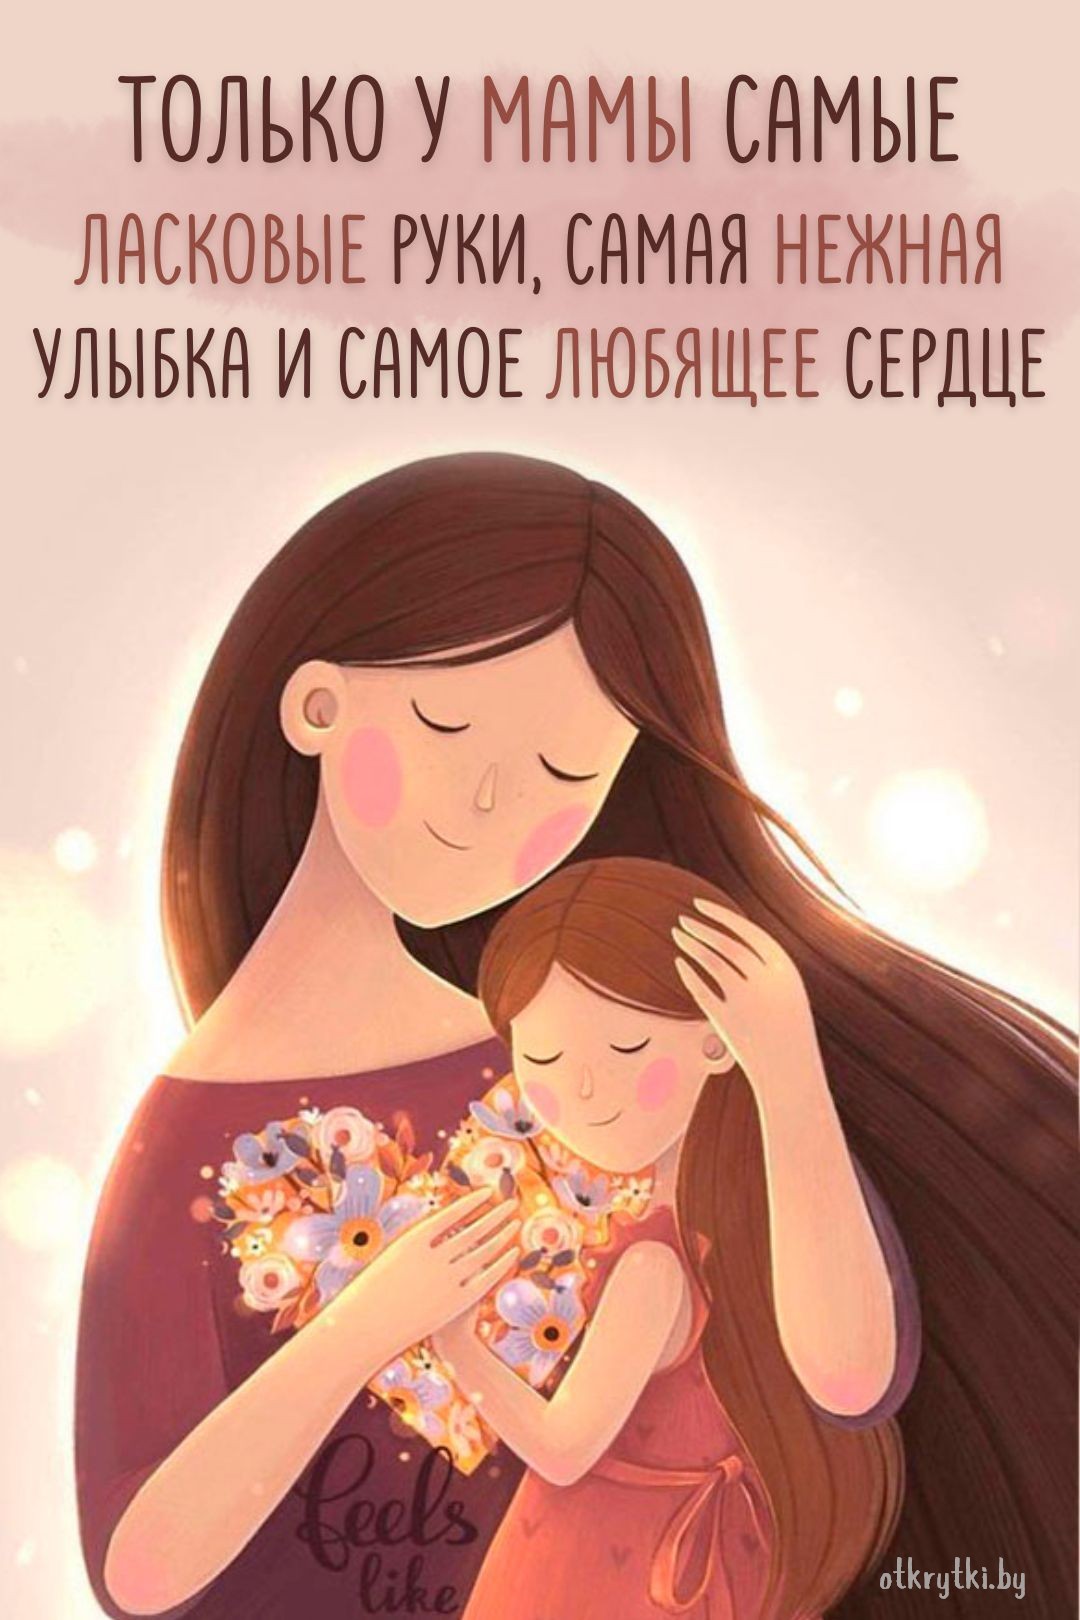 Электронная открытка с надписями про маму